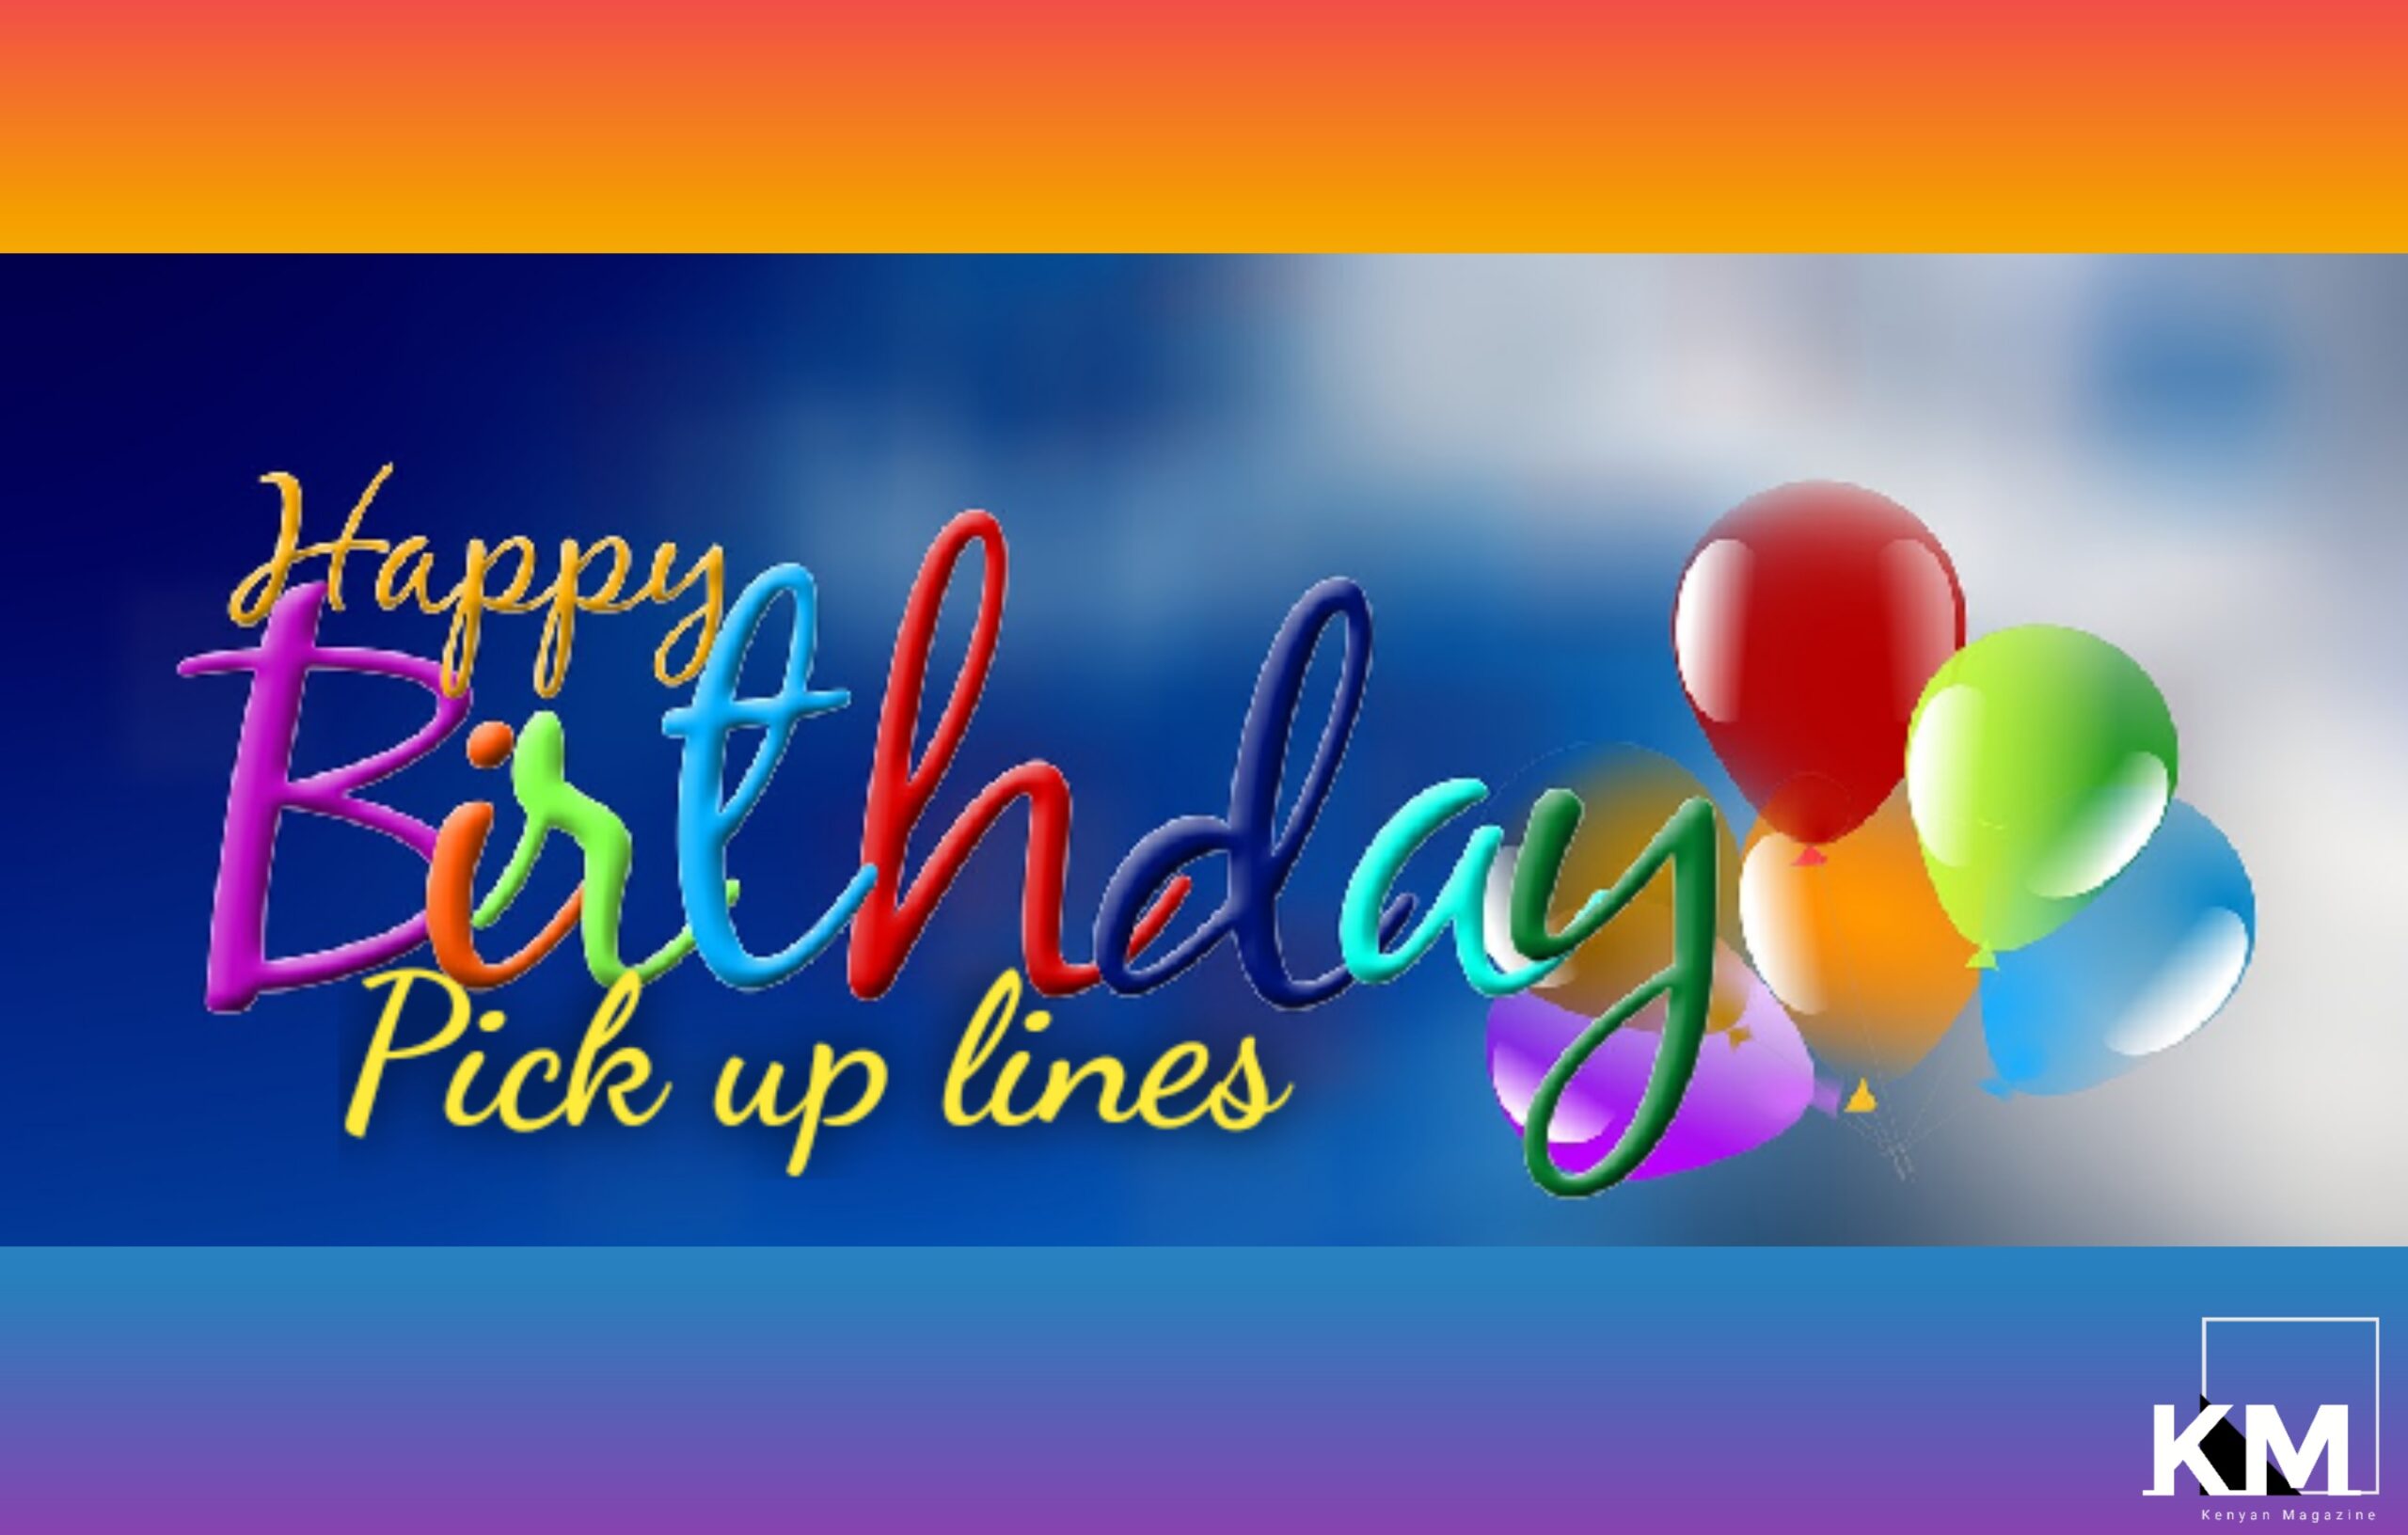 Happy birthday pick up lines